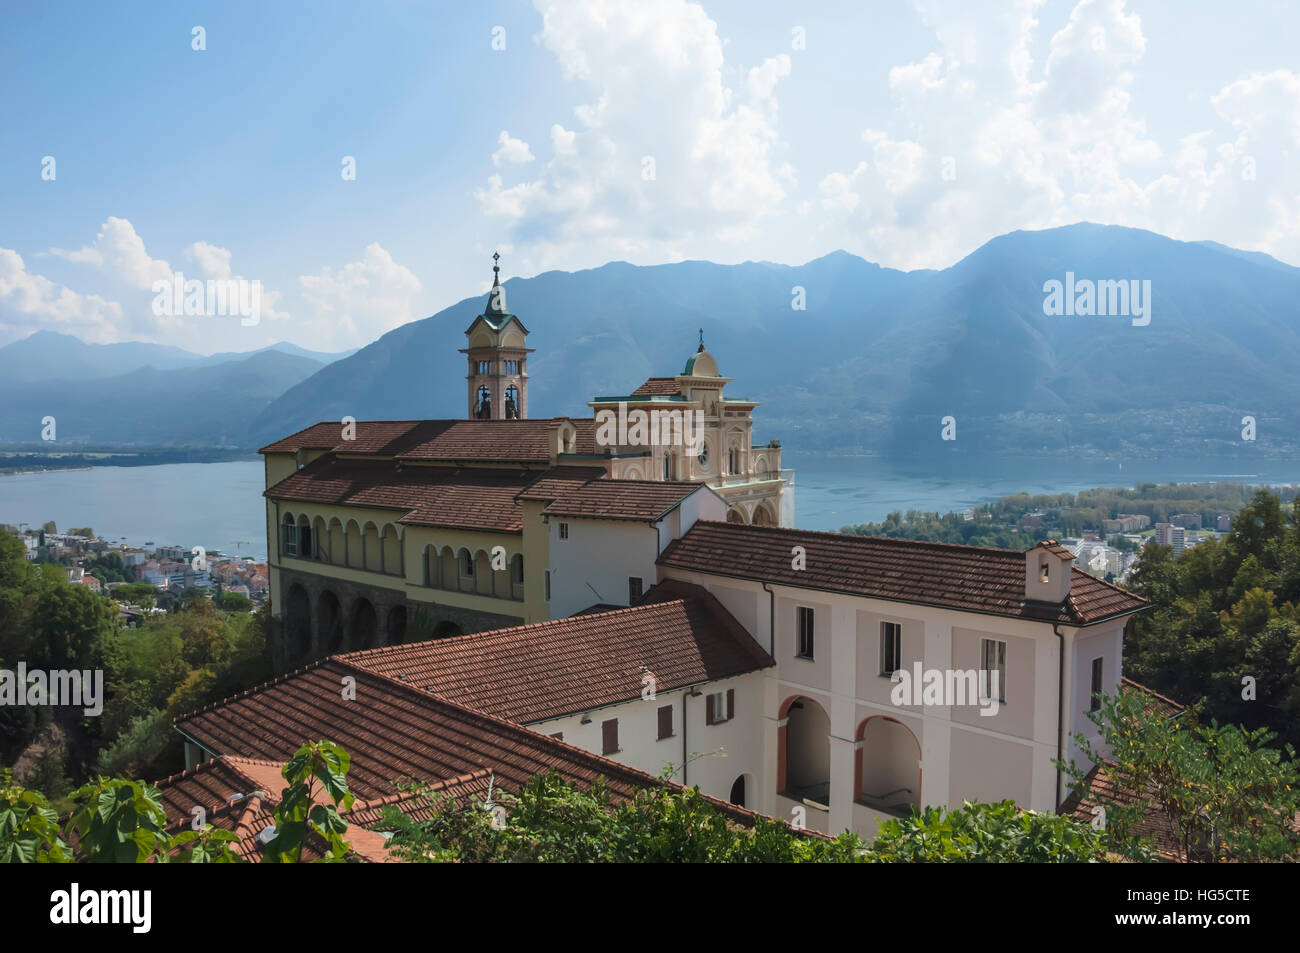 Madonna del Sasso, Monastery, Orselina, Locarno, Lake Maggiore, Ticino, Switzerland Stock Photo